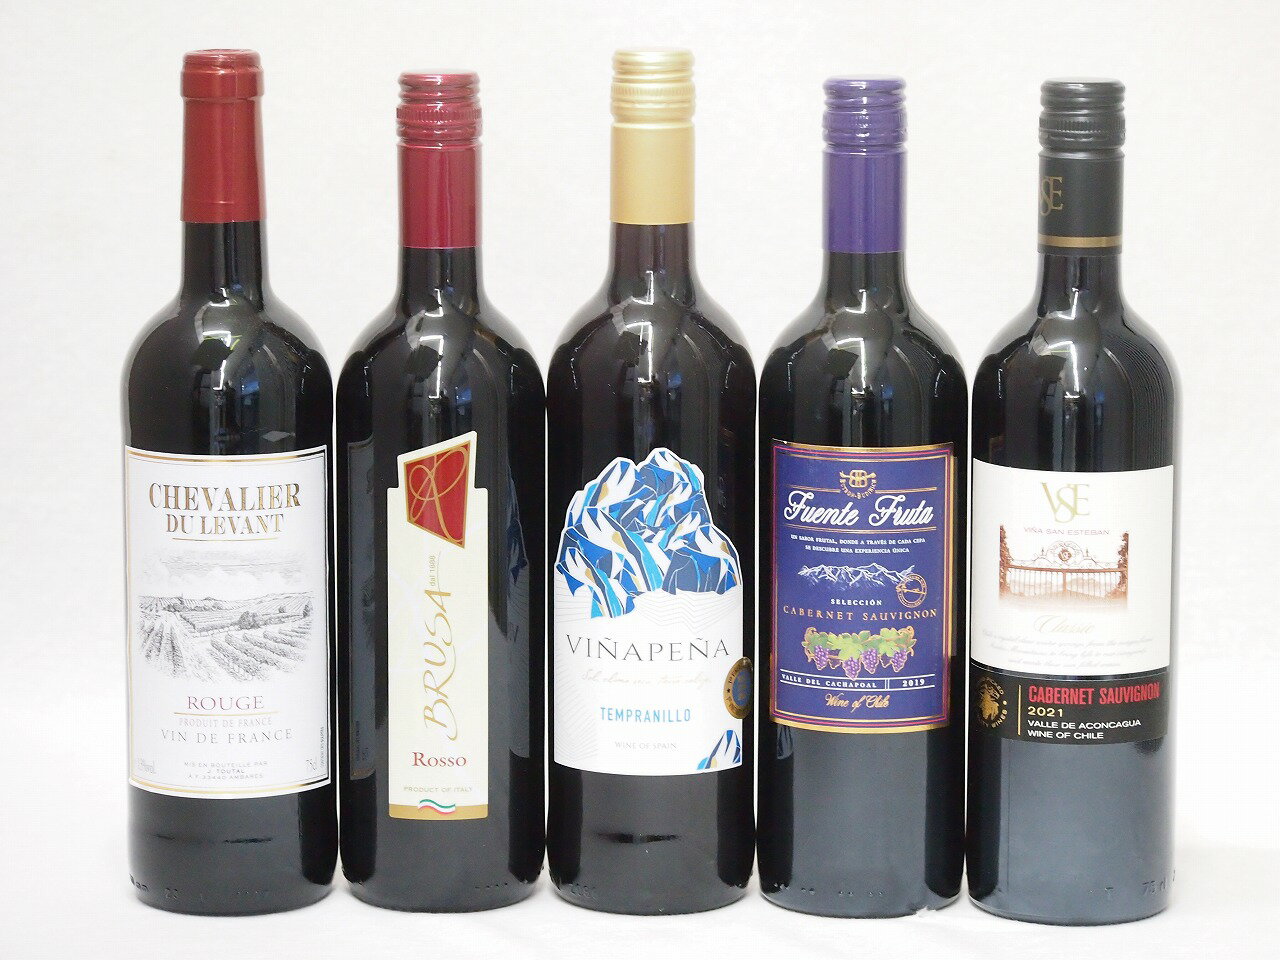 チリワイン セレクション 赤ワイン 5本セット( スペインワイン 1本 フランスワイン 1本 イタリアワイン 1本 チリワイン 2本) 計750ml×5本